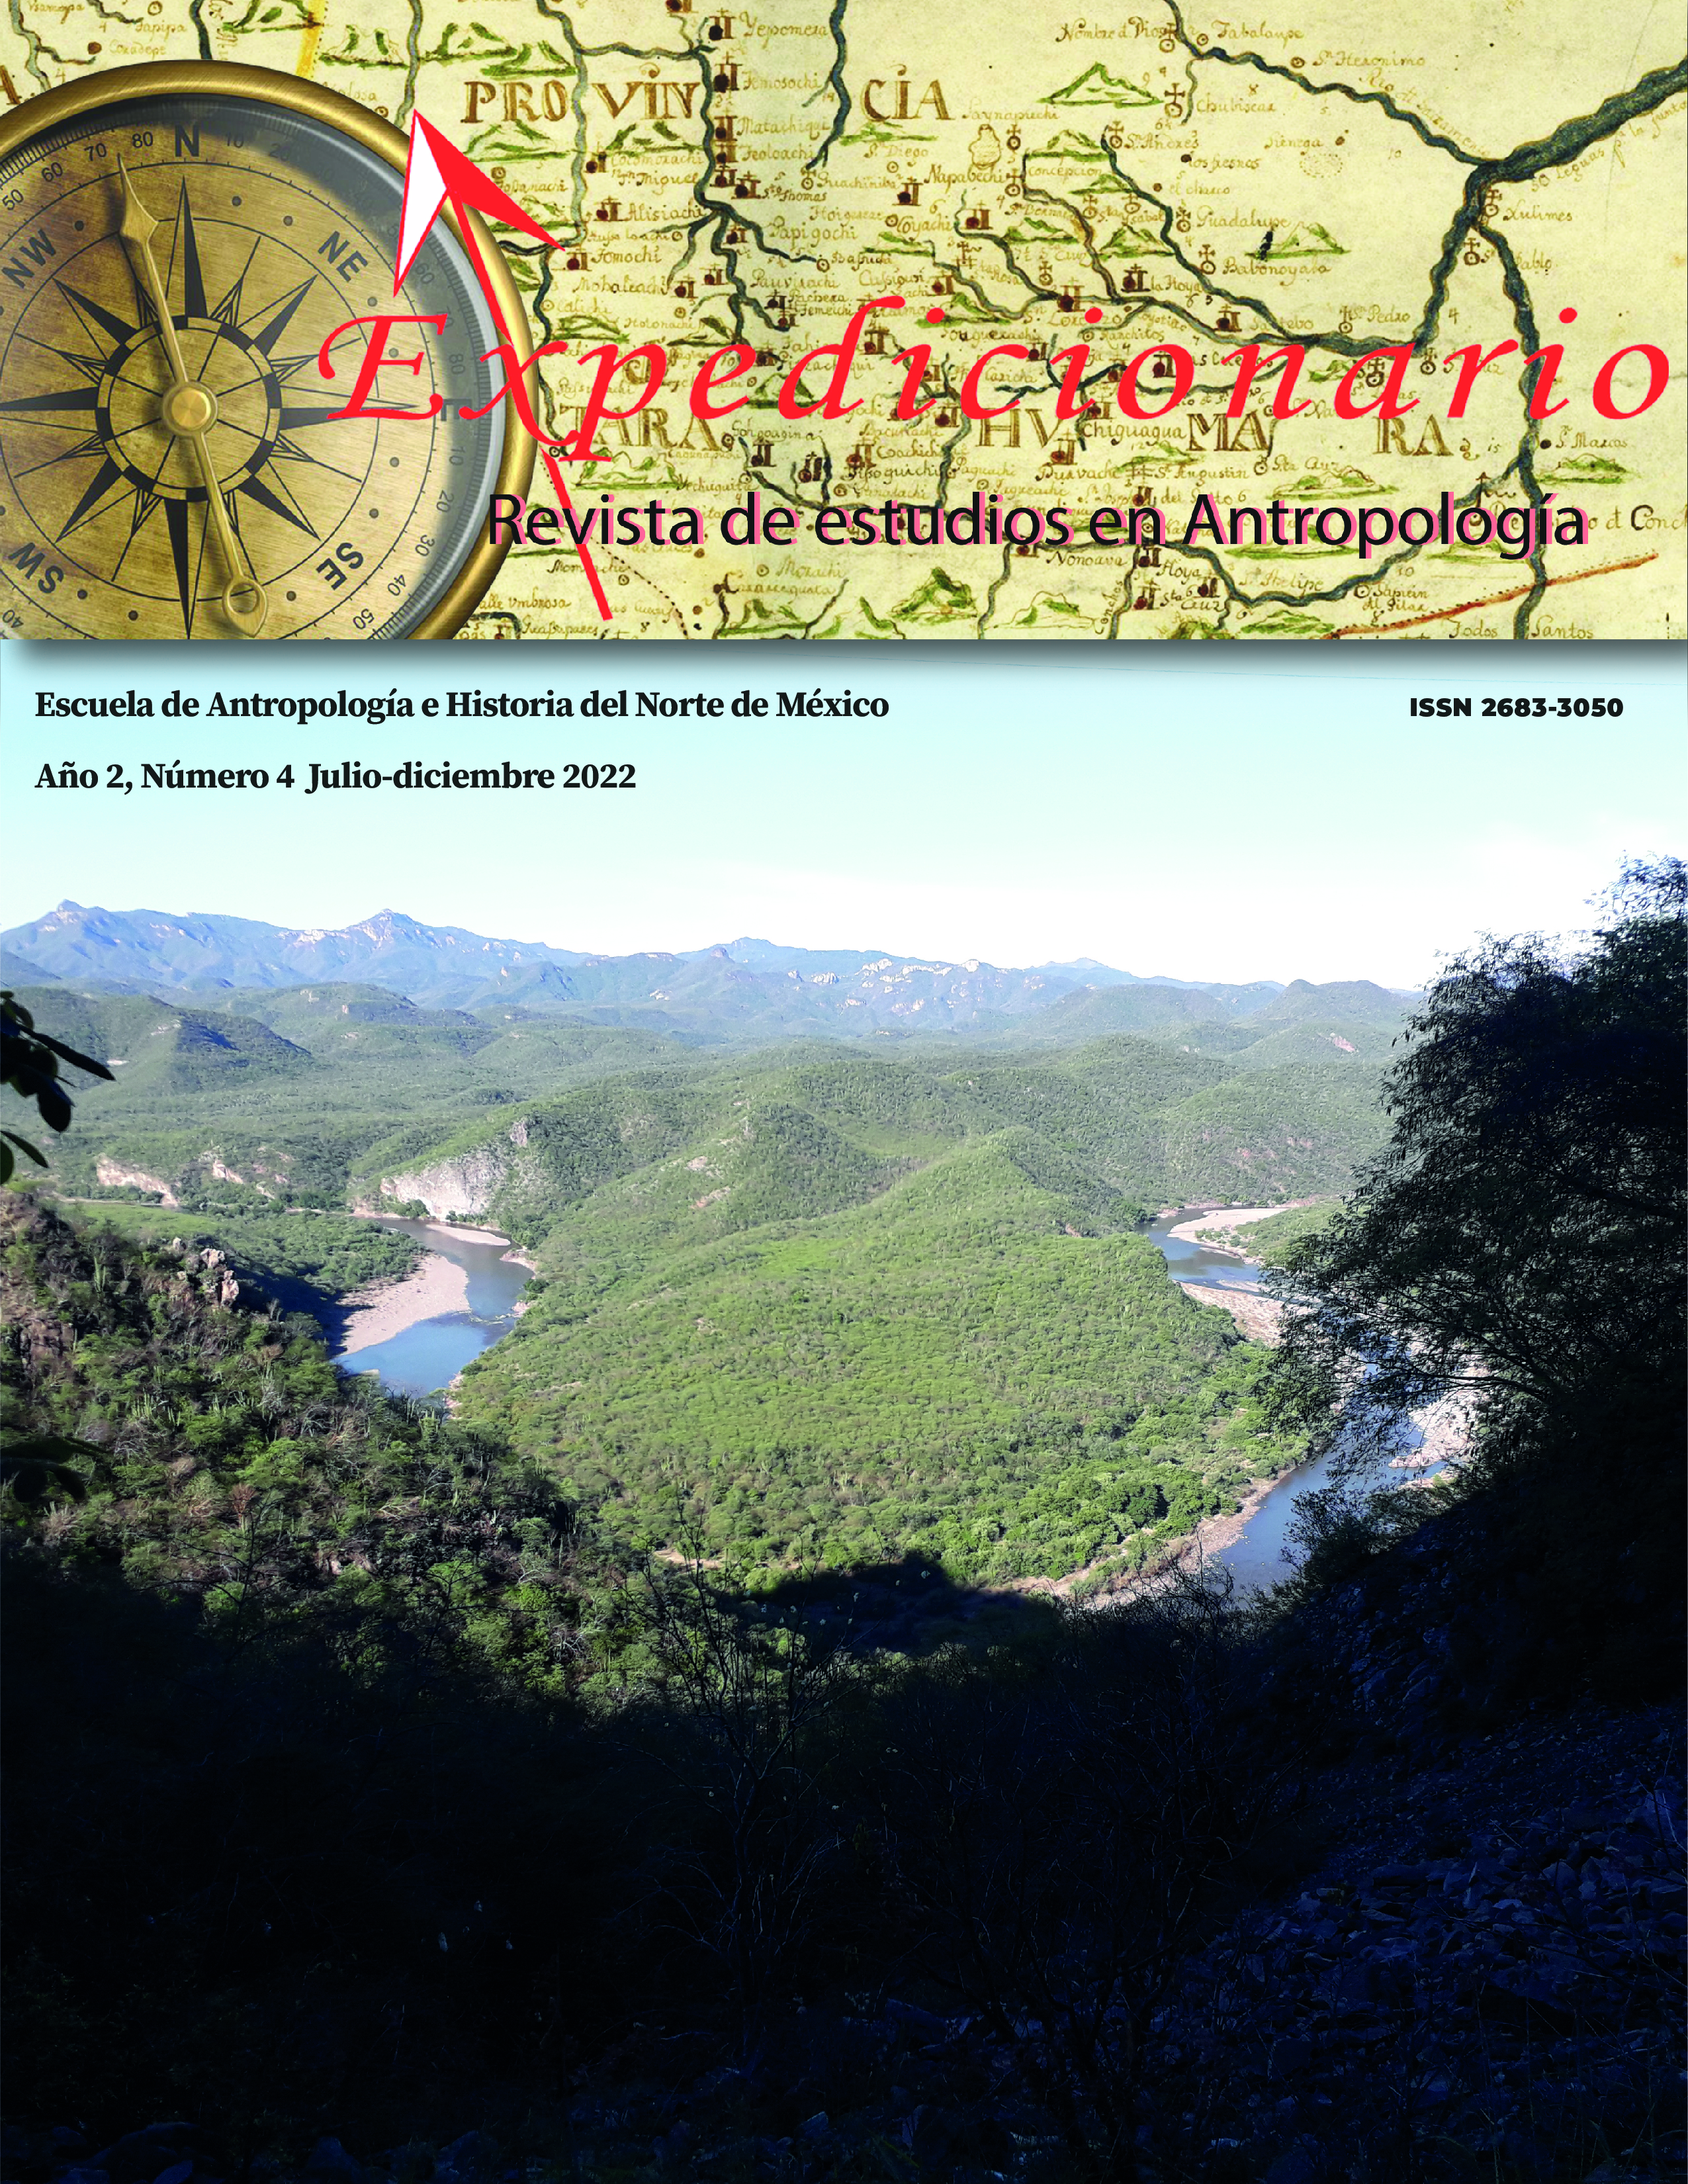 					View No. 4 (2022): Expedicionario. Revista de estudios en Antropología. Julio-diciembre 2022
				